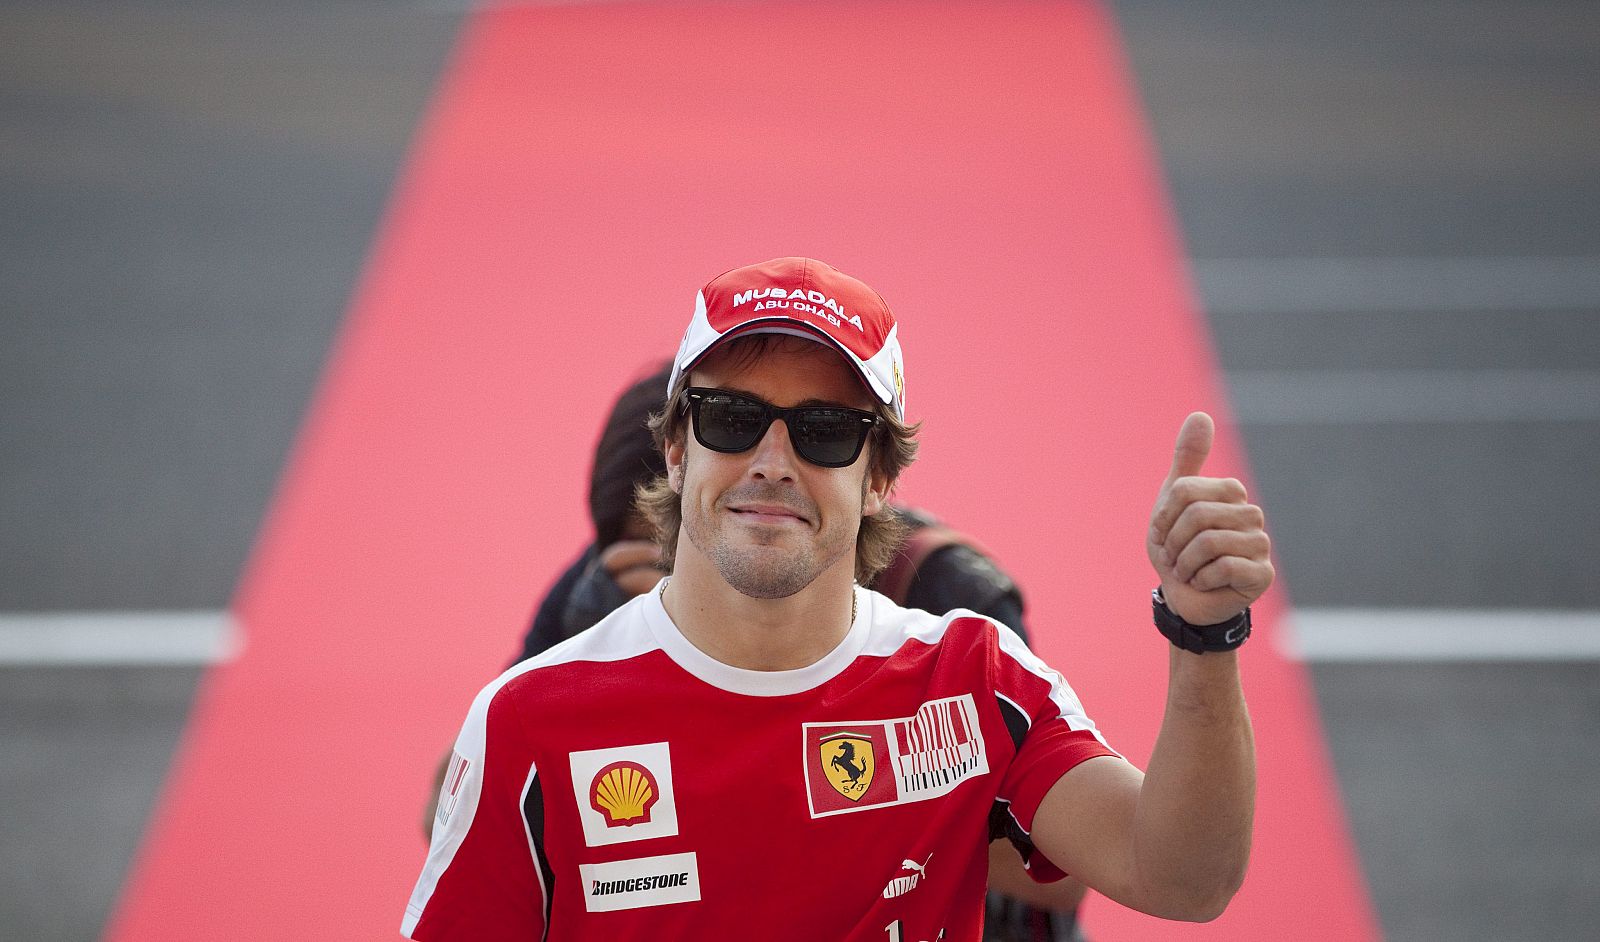 El piloto español de Fórmula Uno Fernando Alonso, de la escudería Ferrari